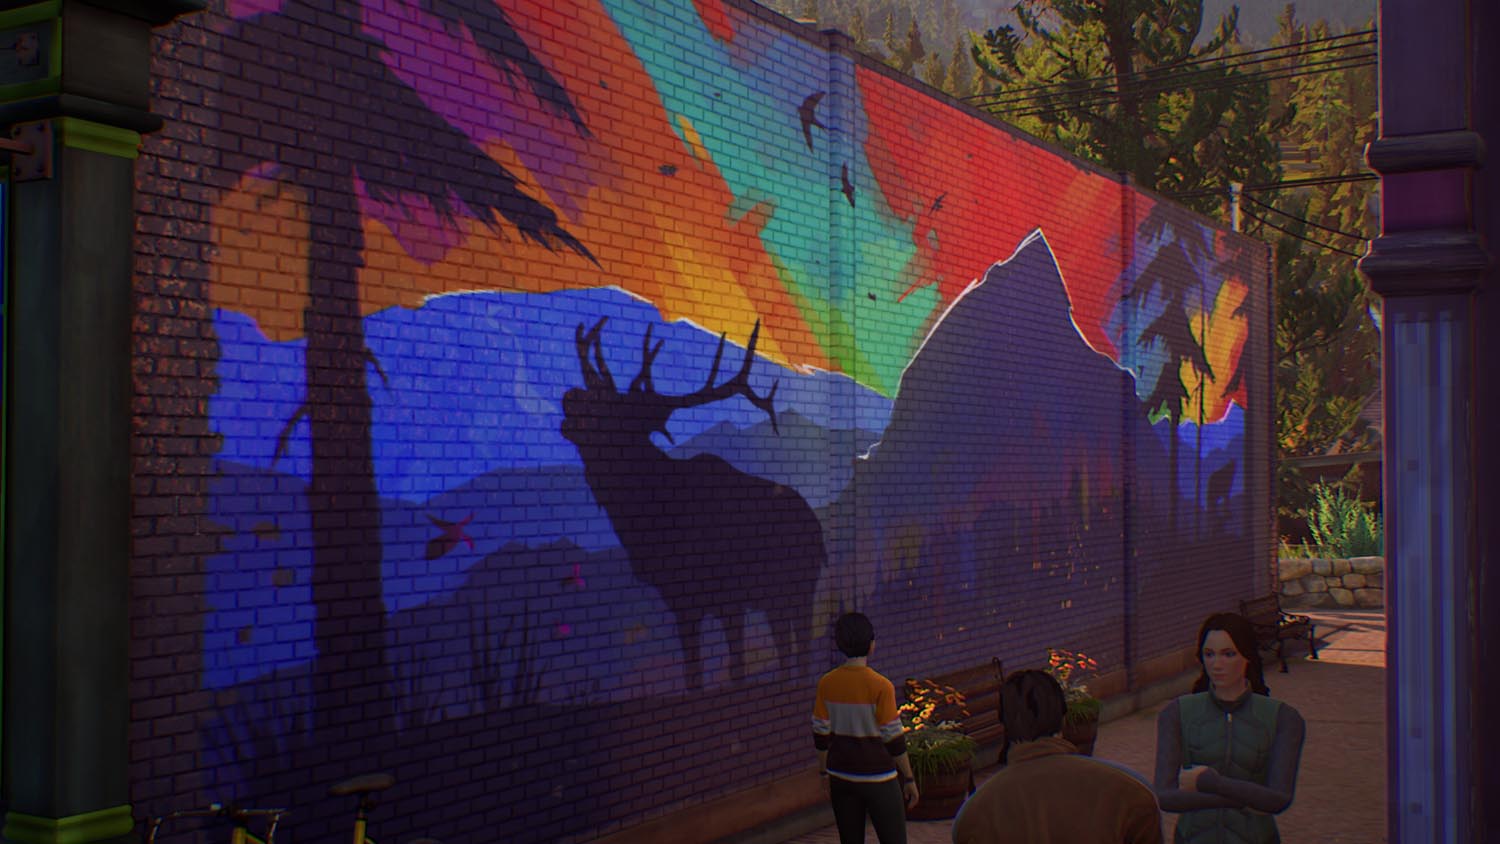 Zu sehen ist ein großes Wandbild, das einen Wald in den Farben eines dunklen Regenbogens erstrahlen lässt, ein Hirsch röhrt da ebenfalls drauf, neben dem Hirsch ist ein Nadelbaum und ein großer Berg zu sehen.